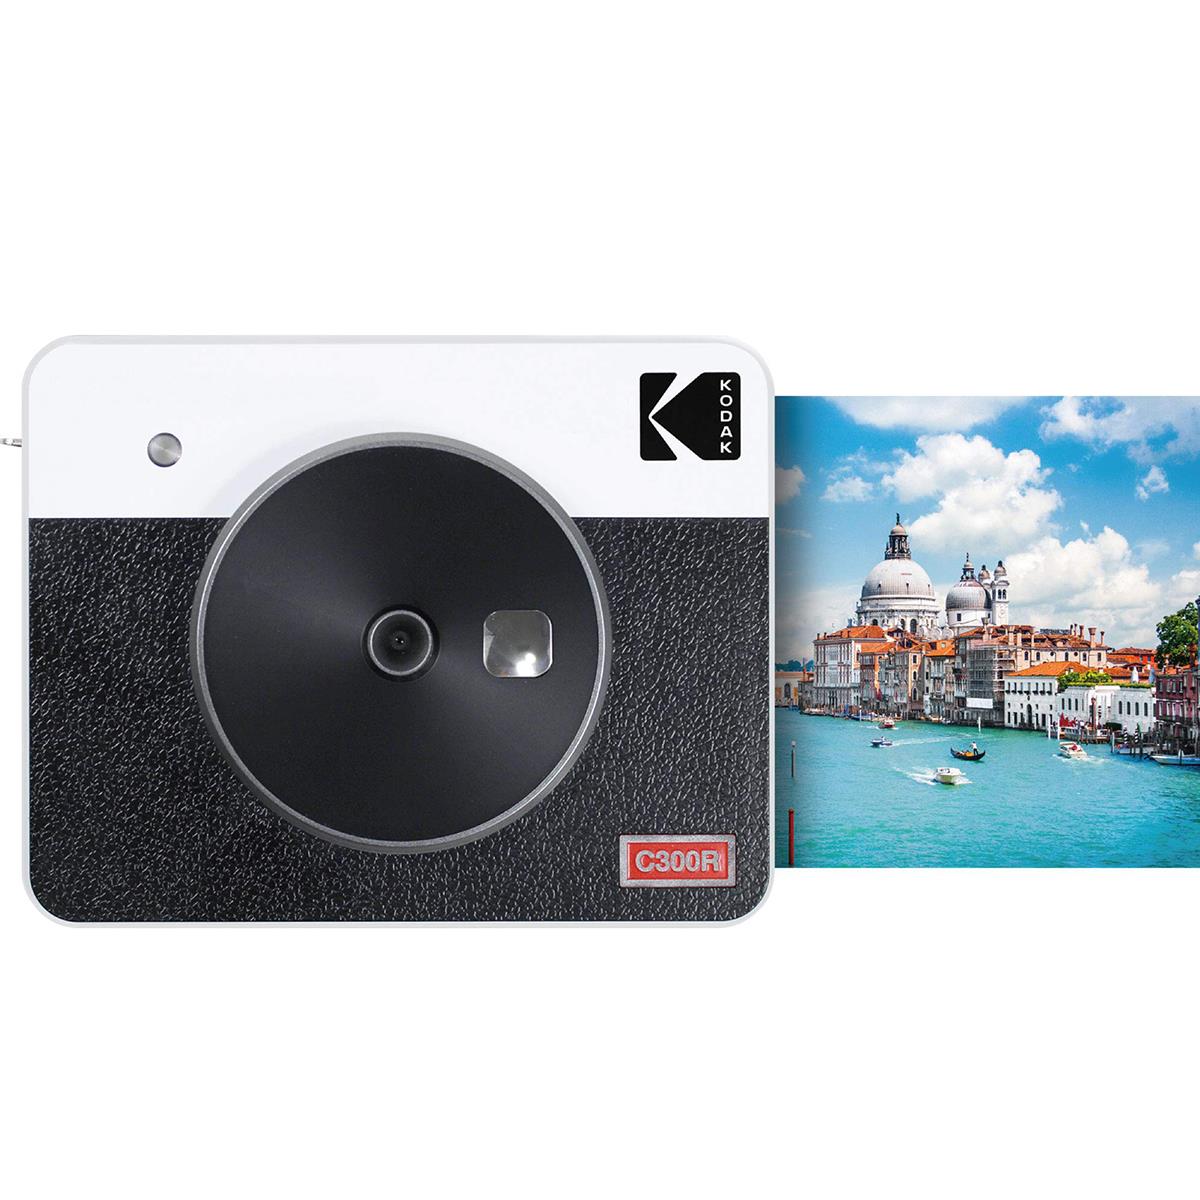 Kodak Mini Shot Combo 3 Retro/C300R - Anında Baskı Dijital Fotoğraf Makinesi Beyaz (ICRG-330 Hediyeli)